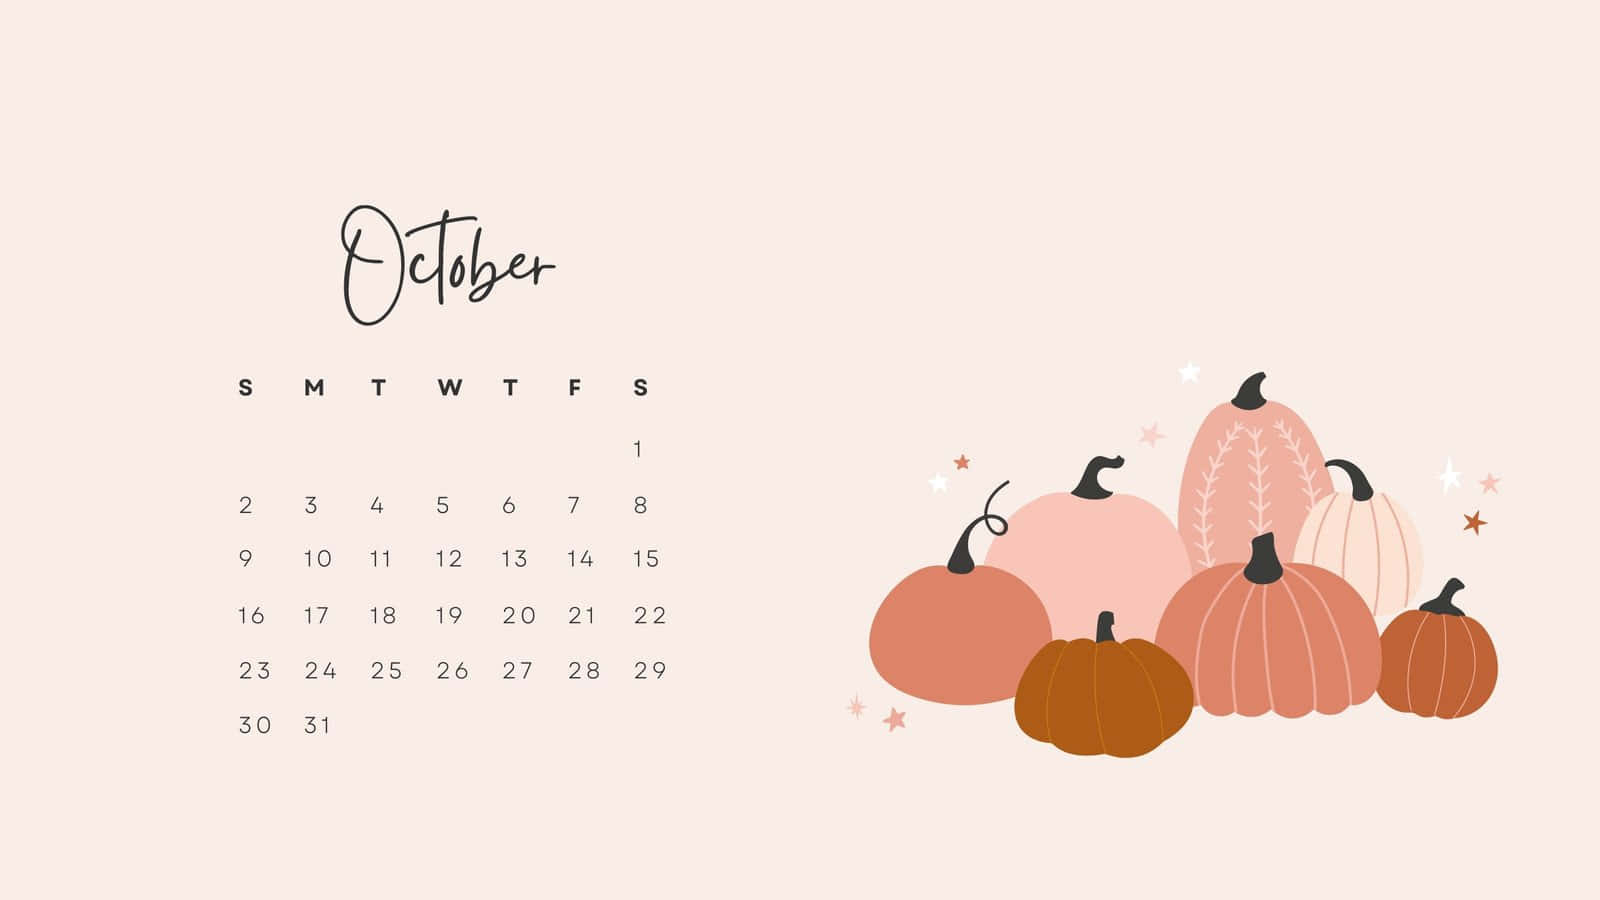 [100+] Cute October Desktop Wallpapers | Wallpapers.com